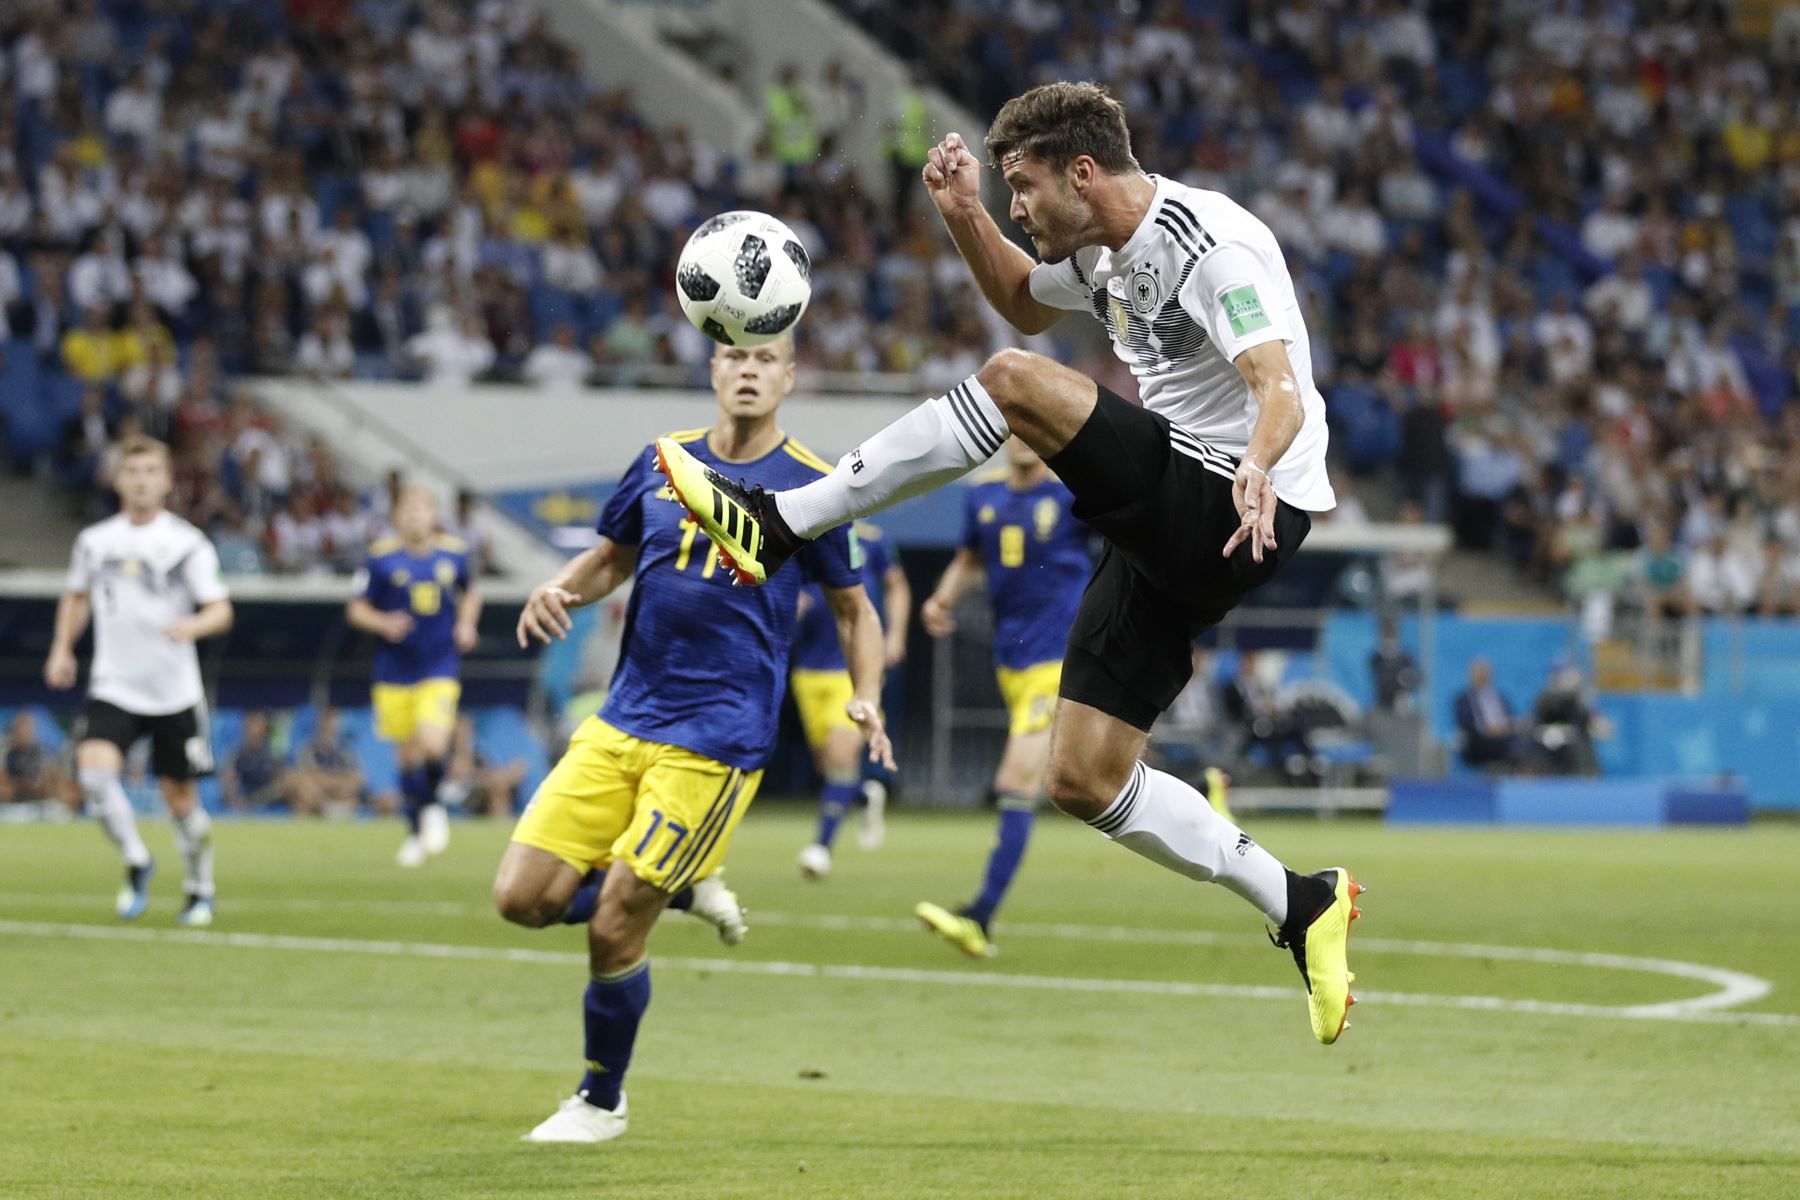 El defensor alemán Jonas Hector controla el balón durante el partido de fútbol del Grupo F de la Copa Mundial Rusia 2018 entre Alemania y Suecia en el estadio Fisht de Sochi.Foto:AFP